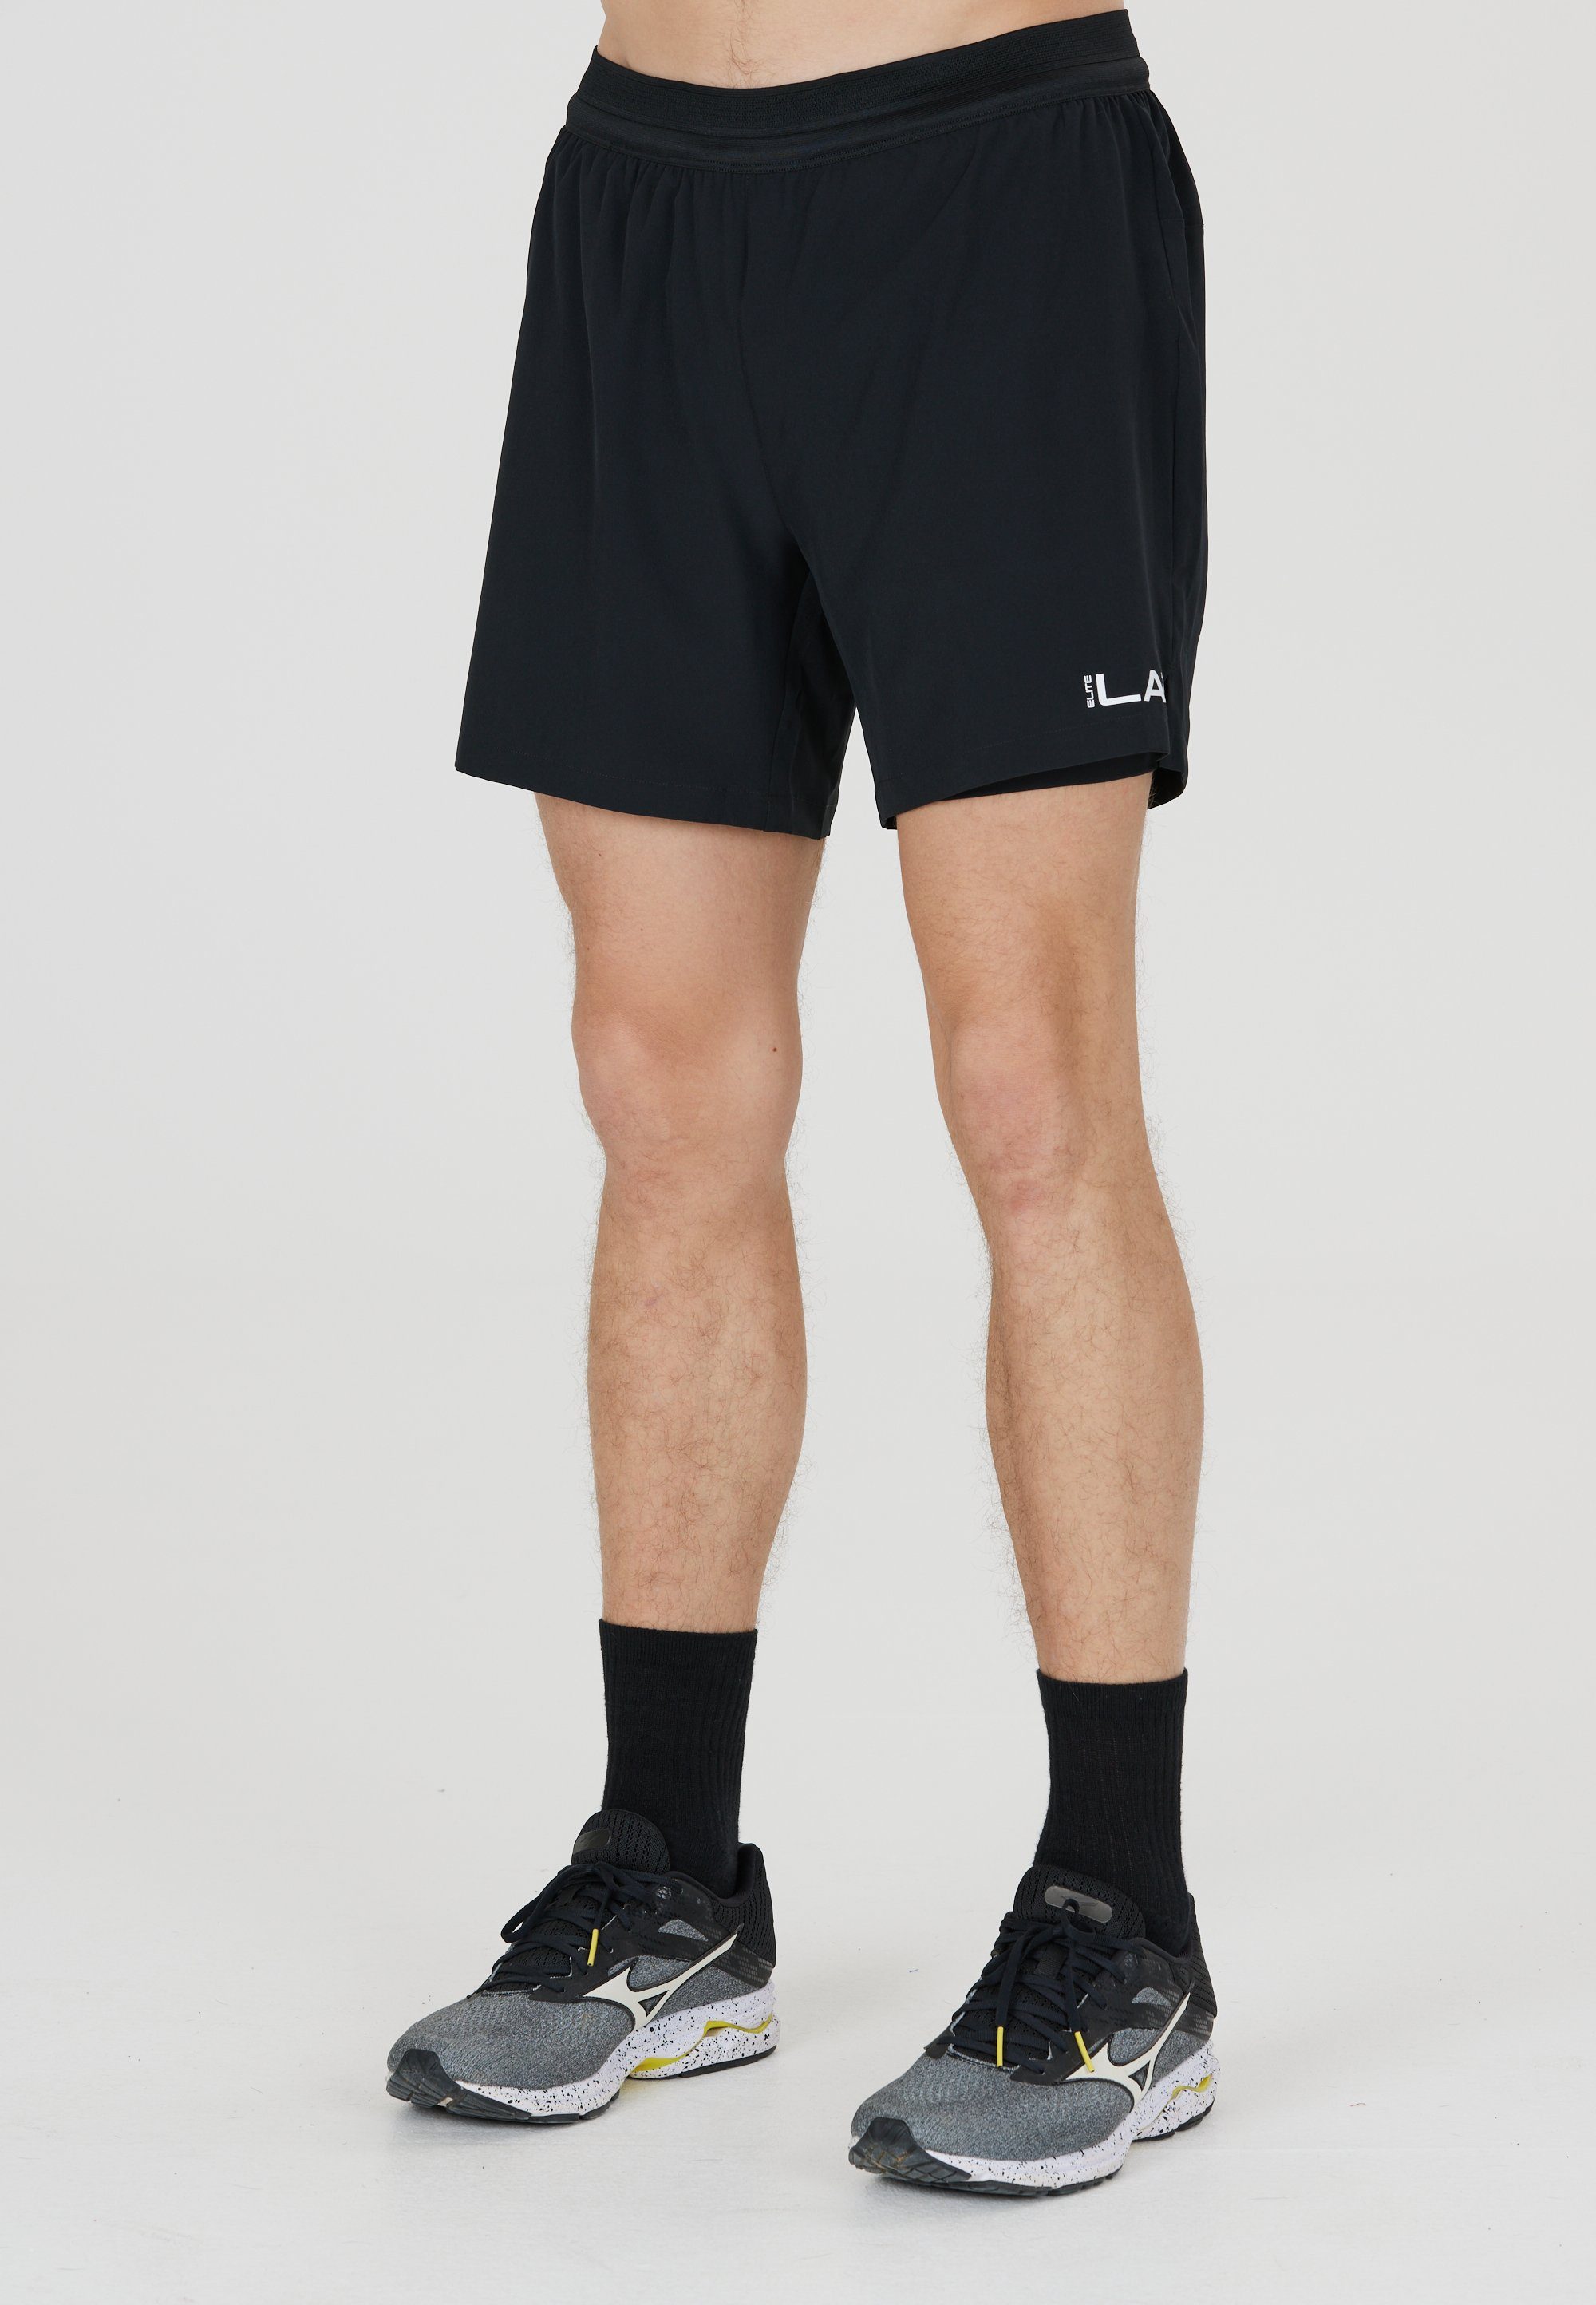 Core LAB ELITE Innentight Shorts mit enganliegender